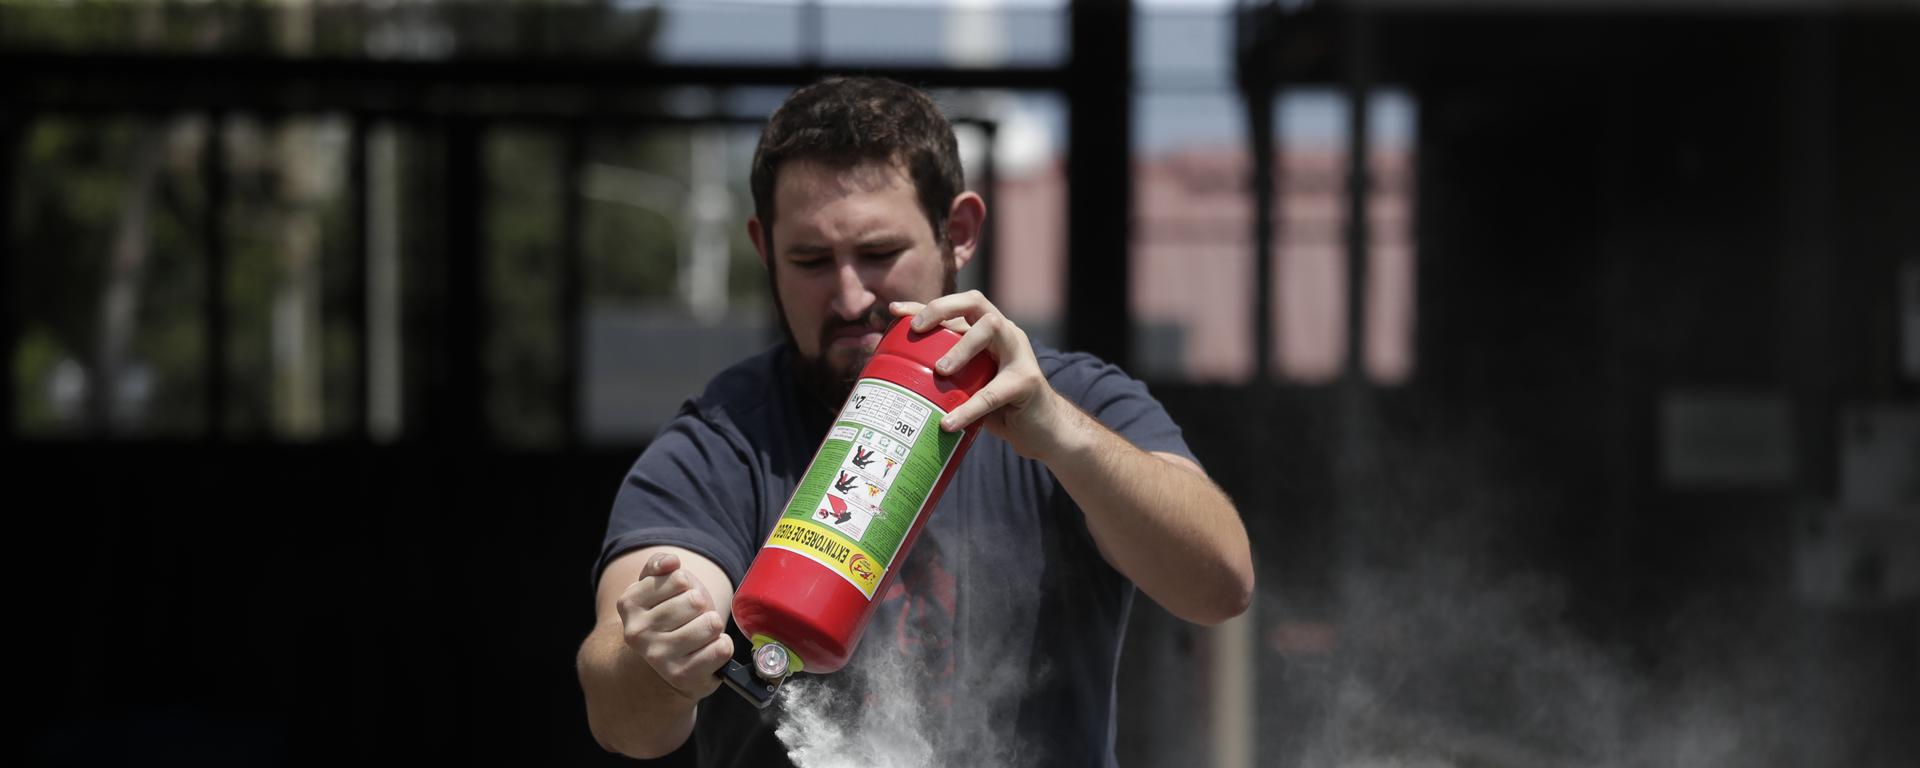 Extintores bamba: así opera la red que pone en riesgo la vida de miles de peruanos